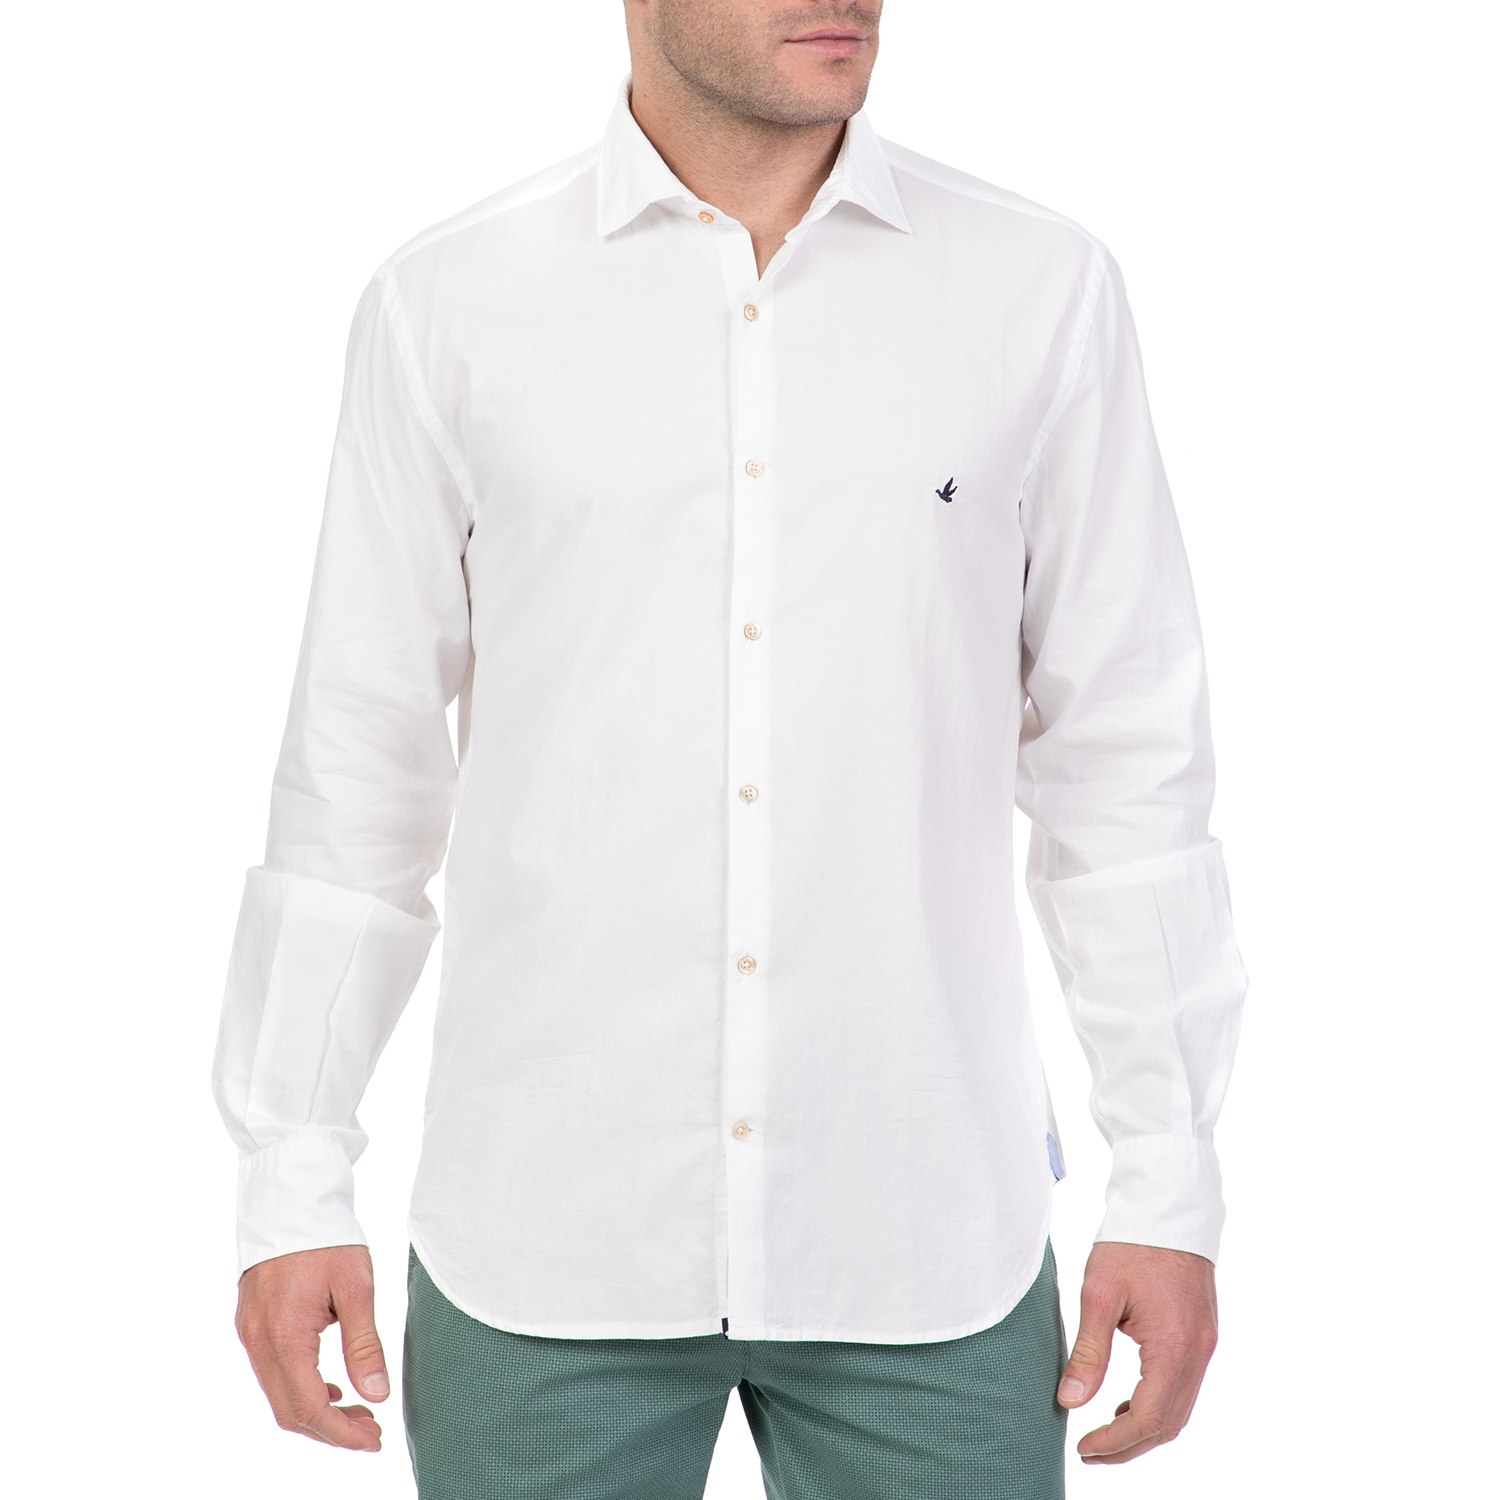 BROOKSFIELD - Ανδρικό μακρυμάνικο πουκάμισο BROOKSFIELD λευκό Ανδρικά/Ρούχα/Πουκάμισα/Μακρυμάνικα